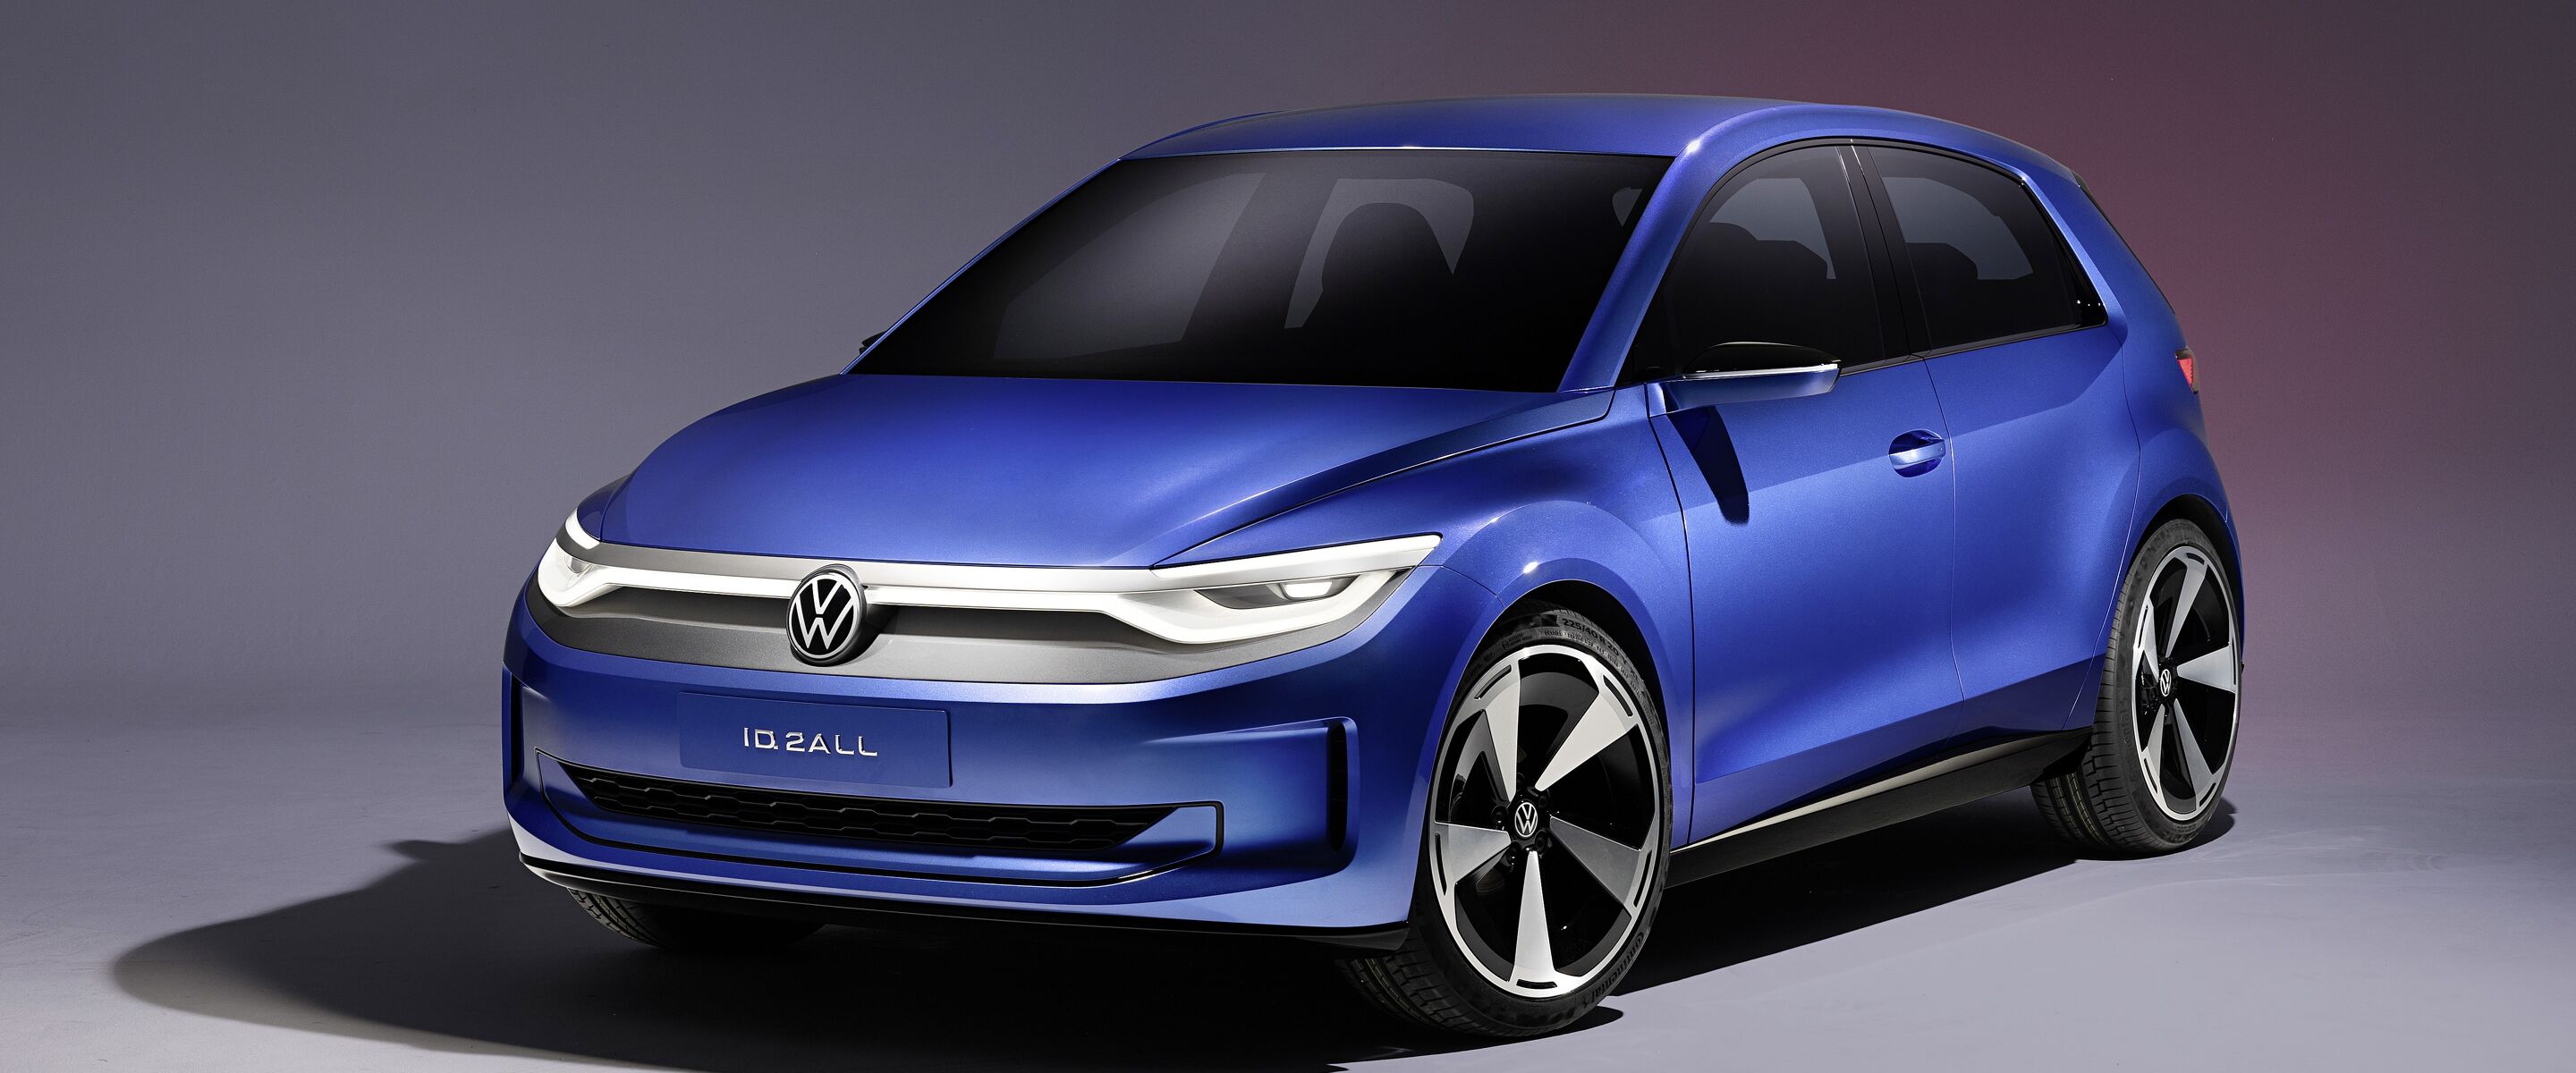 Volkswagen introduceert de elektrische ID. 2all concept